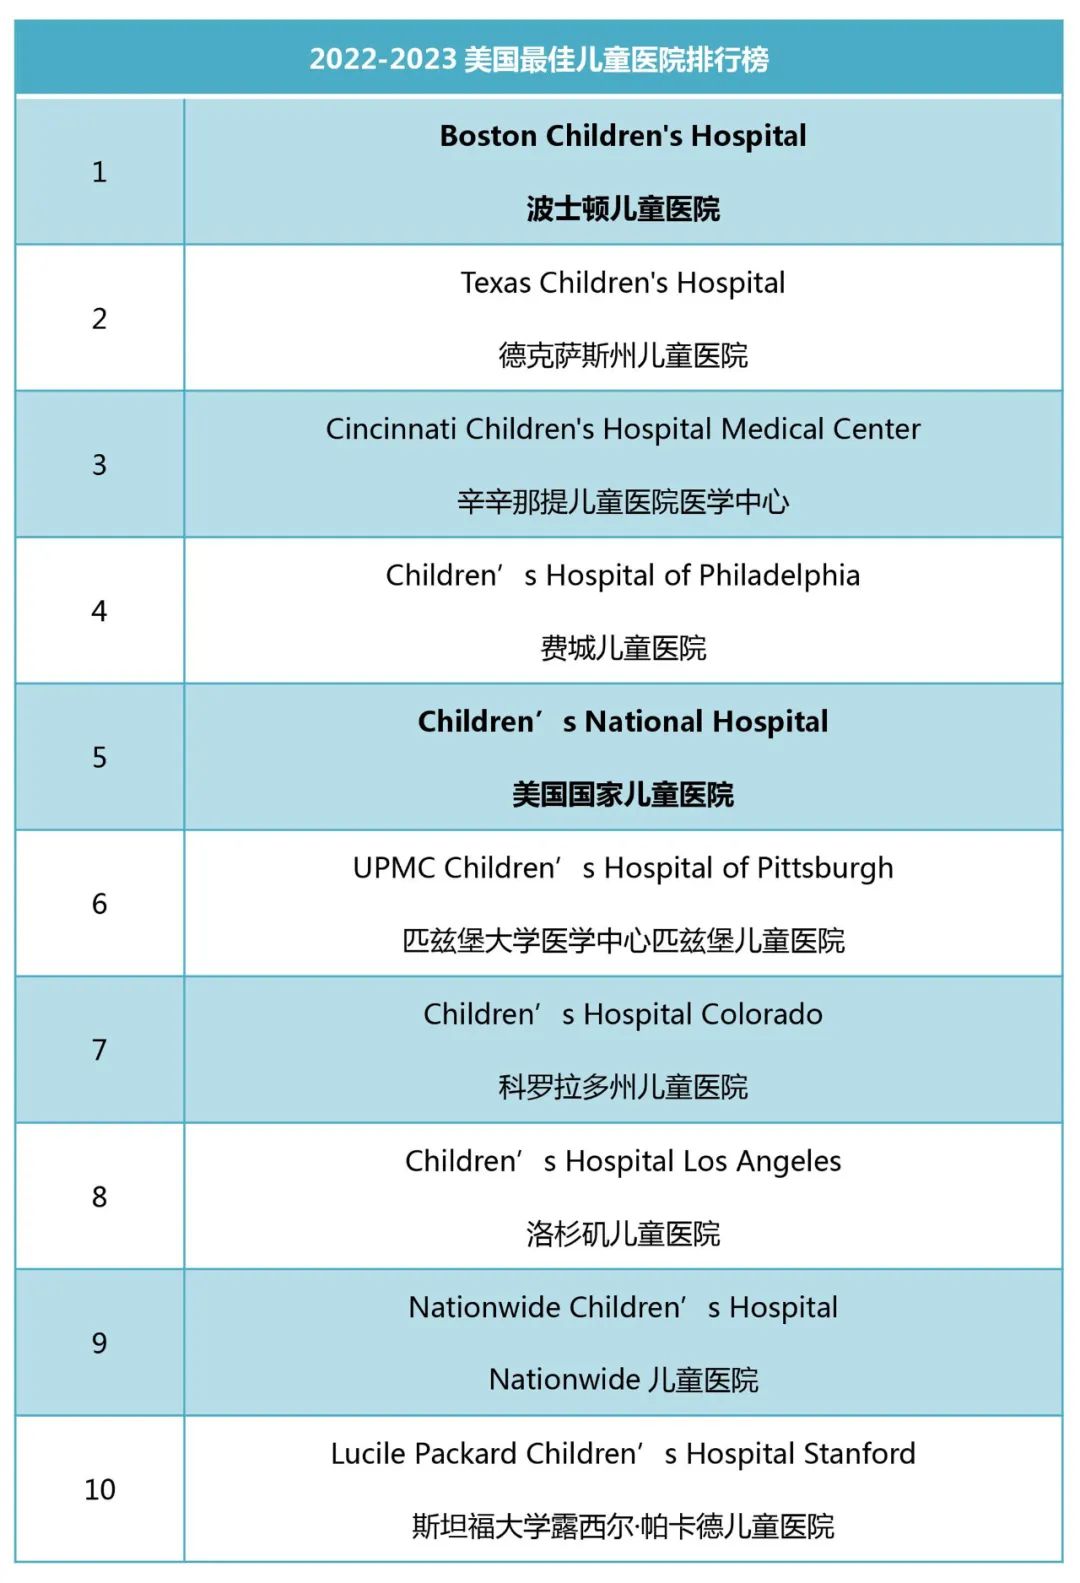 2022美国儿童医院排行榜